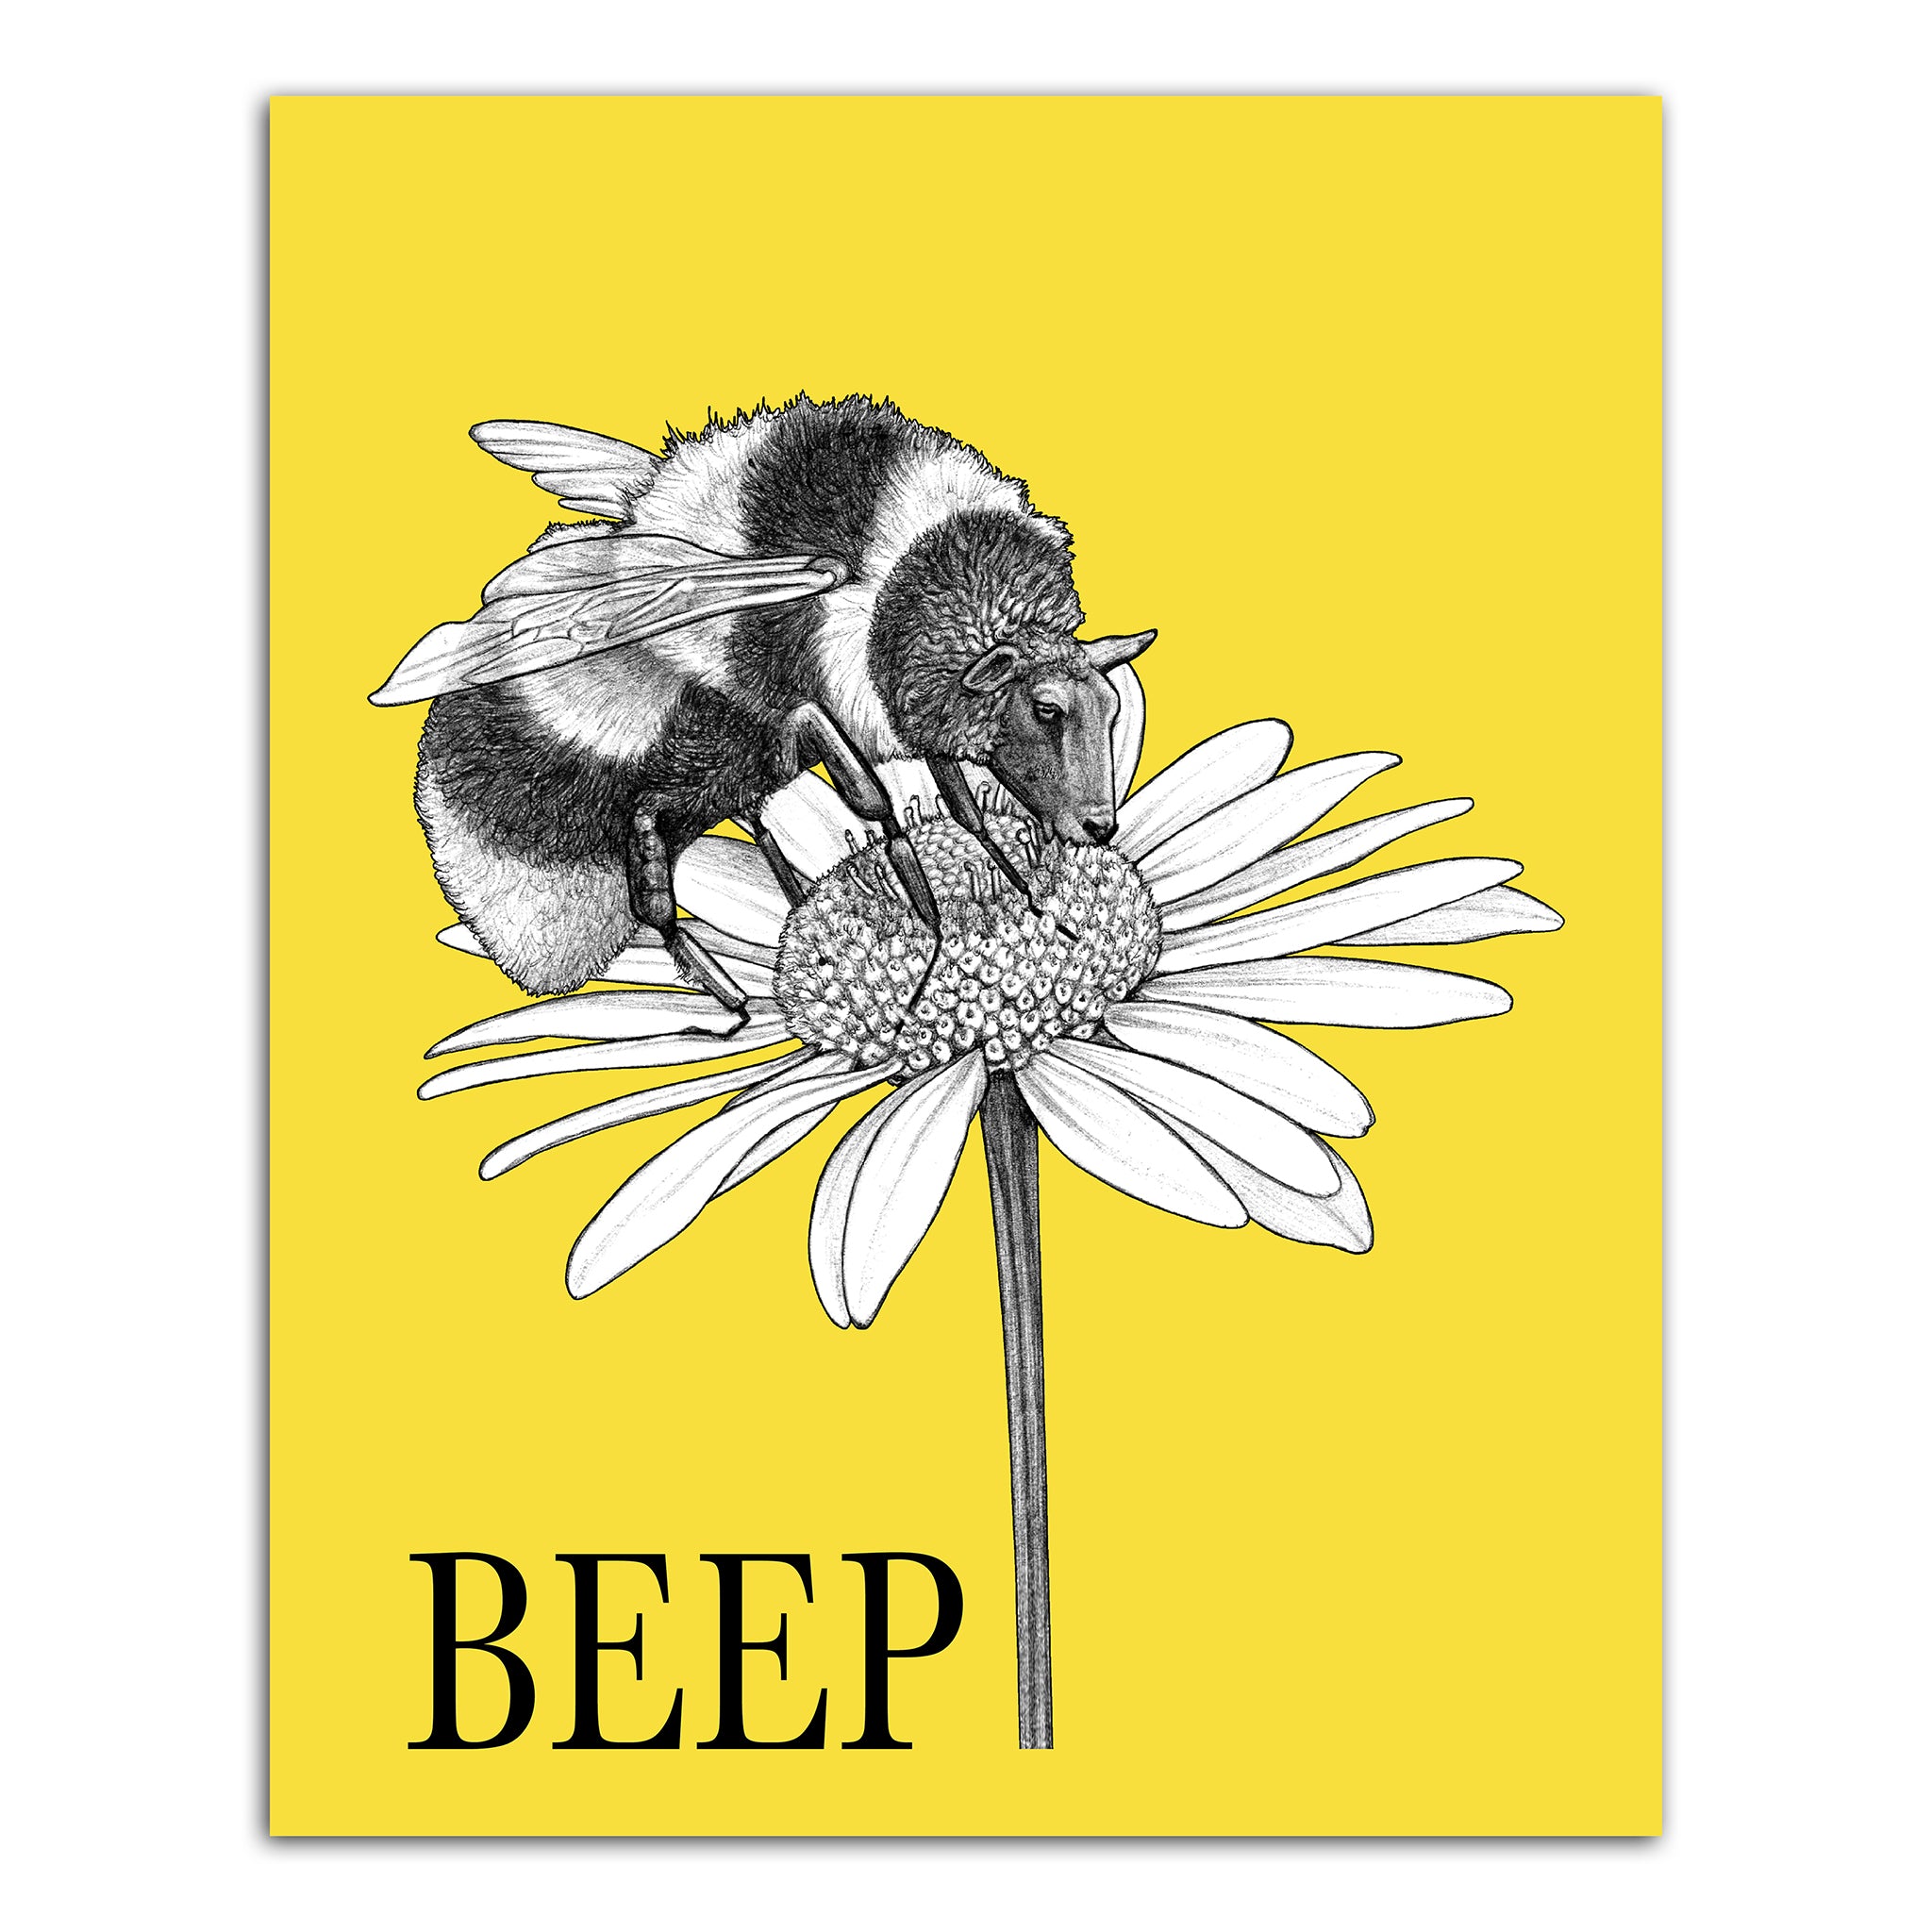 Beep | Bee + Sheep Hybrid Animal | 8x10" Color Print